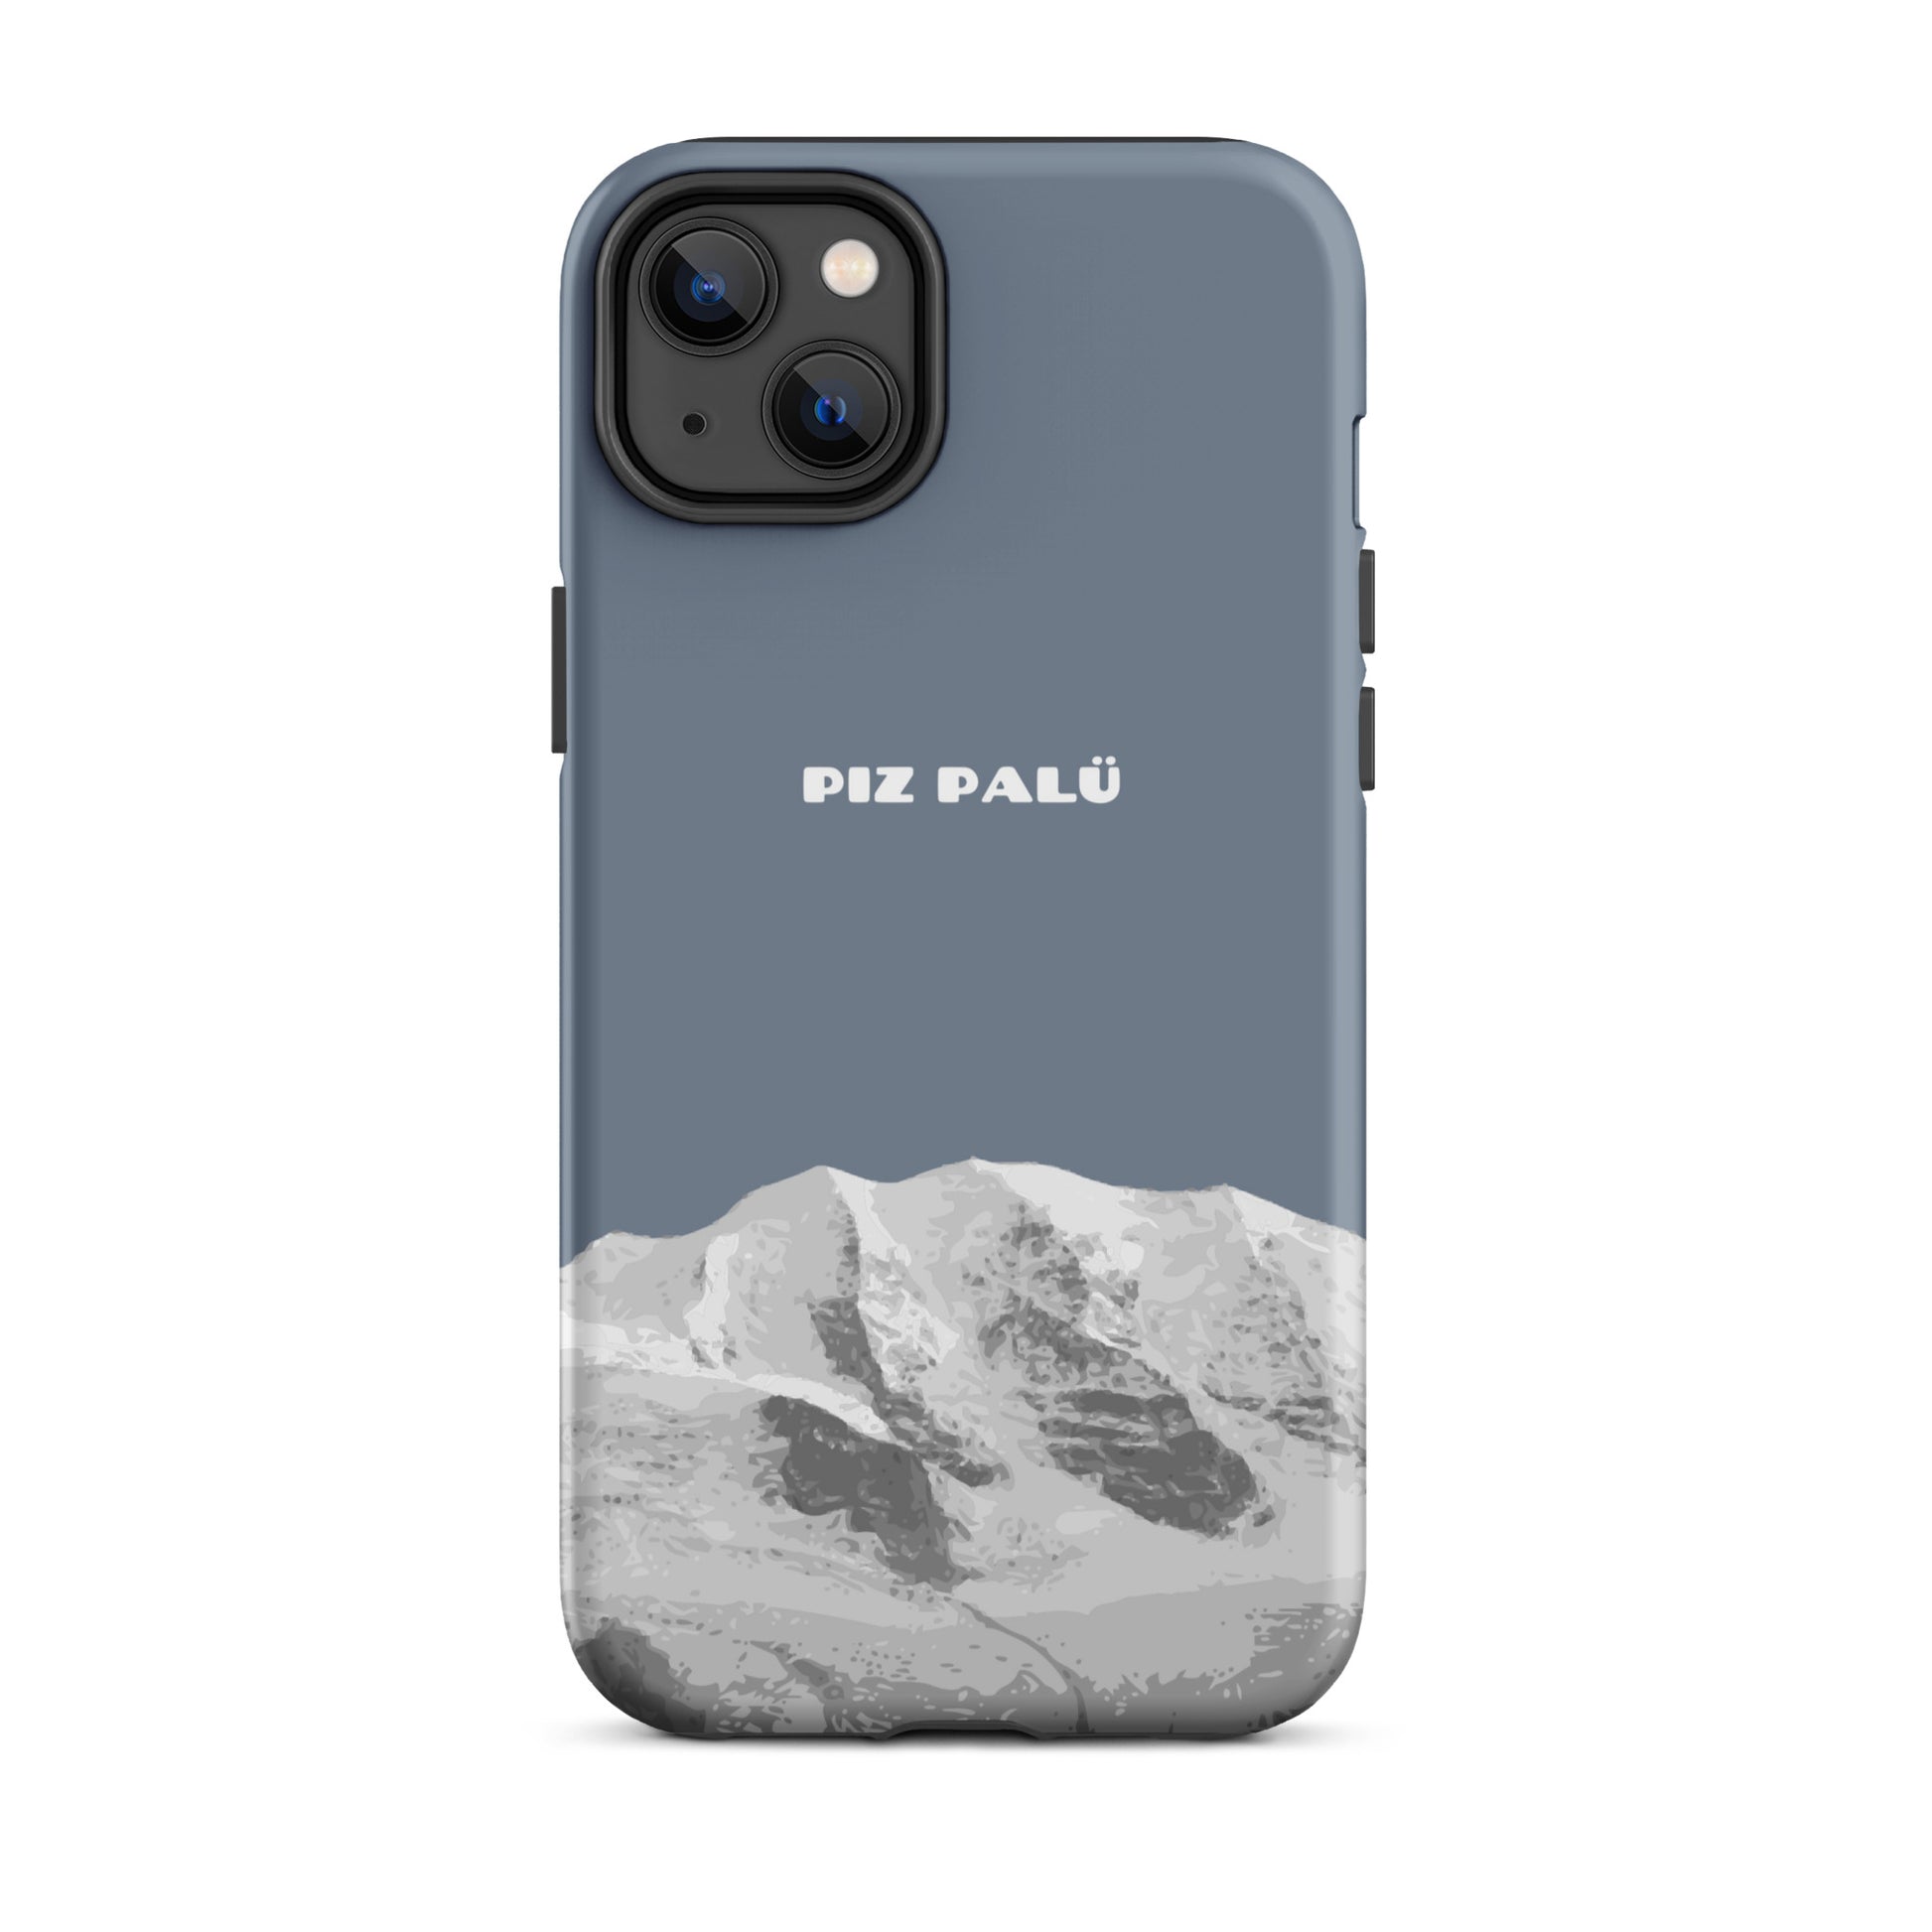 Hülle für das iPhone 14 Plus von Apple in der Farbe Schiefergrau, dass den Piz Palü in Graubünden zeigt.